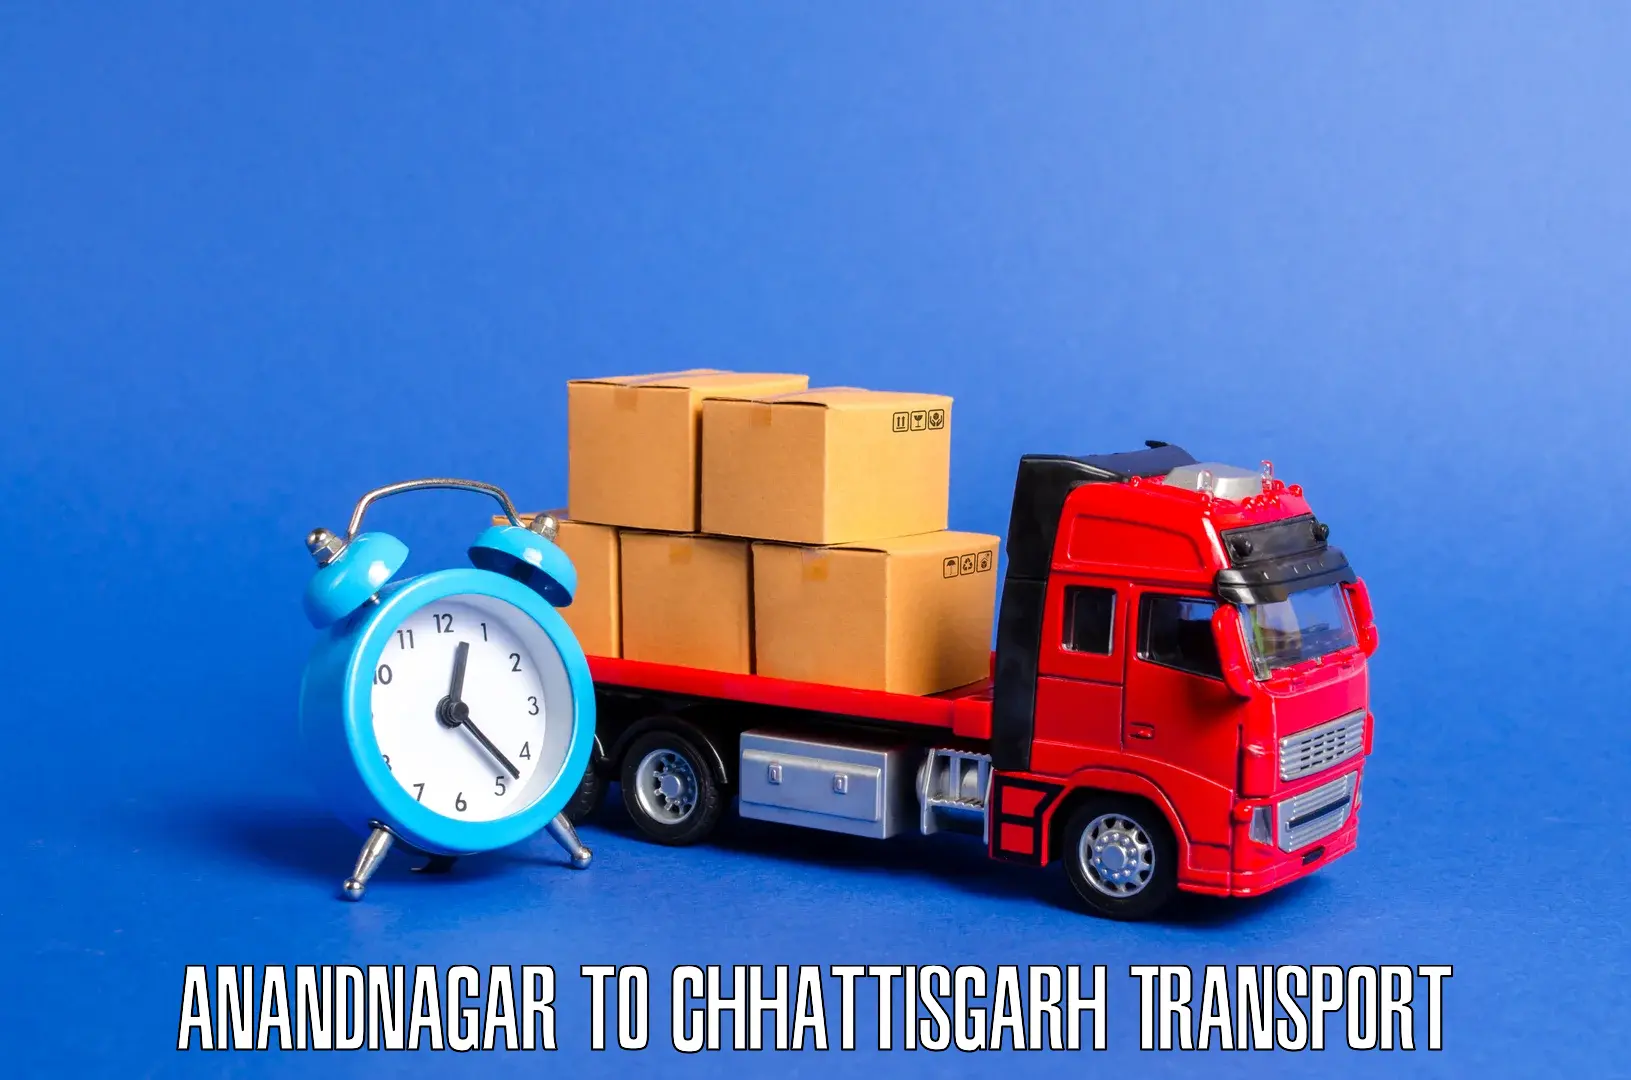 Air freight transport services in Anandnagar to Dantewada